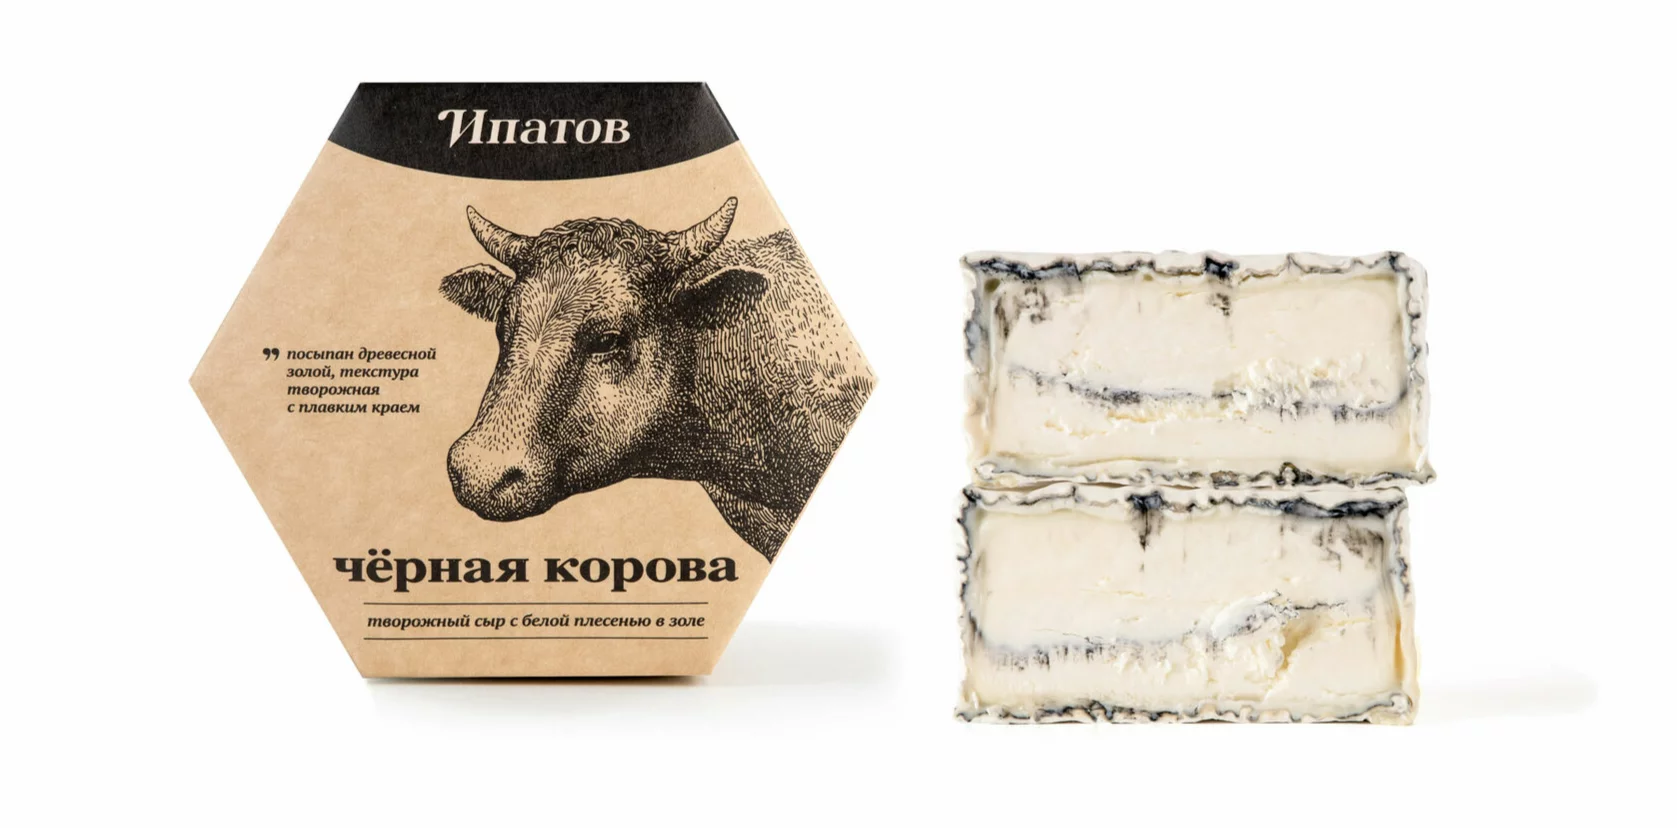 Сыр мягкий с белой плесенью в золе "Черная корова" Ипатов 45% 125 гр